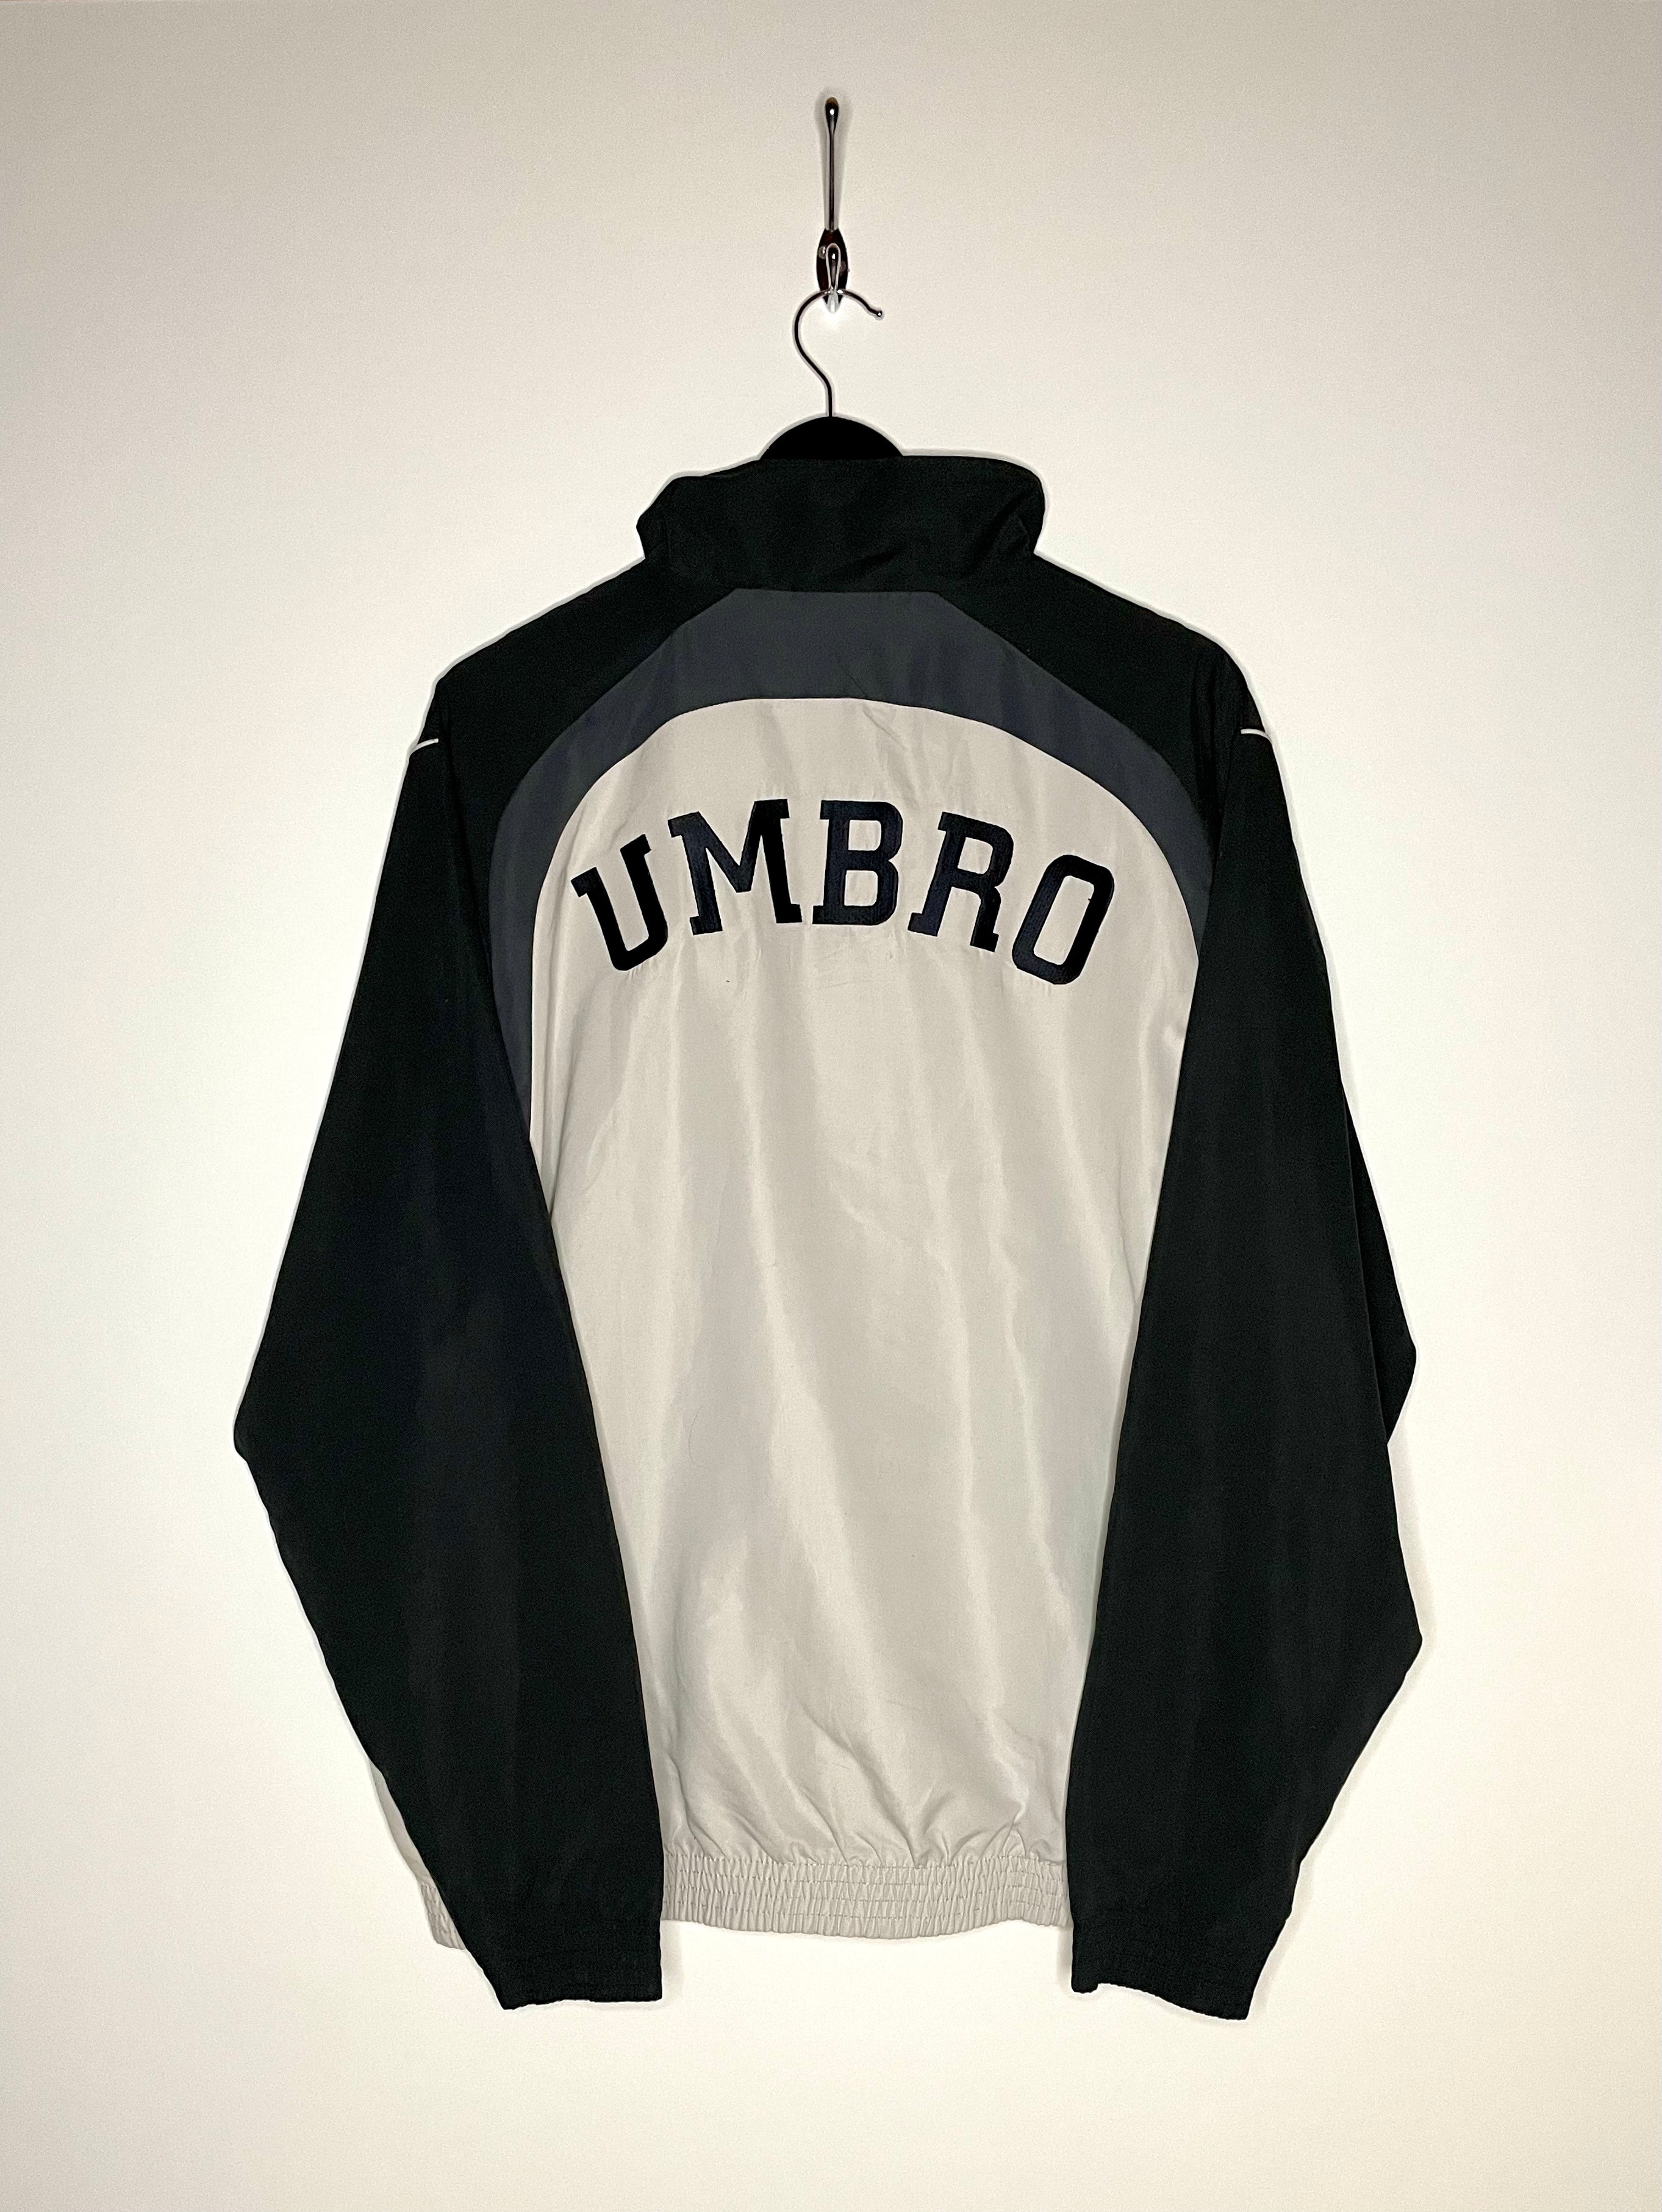 Umbro Vintage Training Jacket Grey/Black Size XL